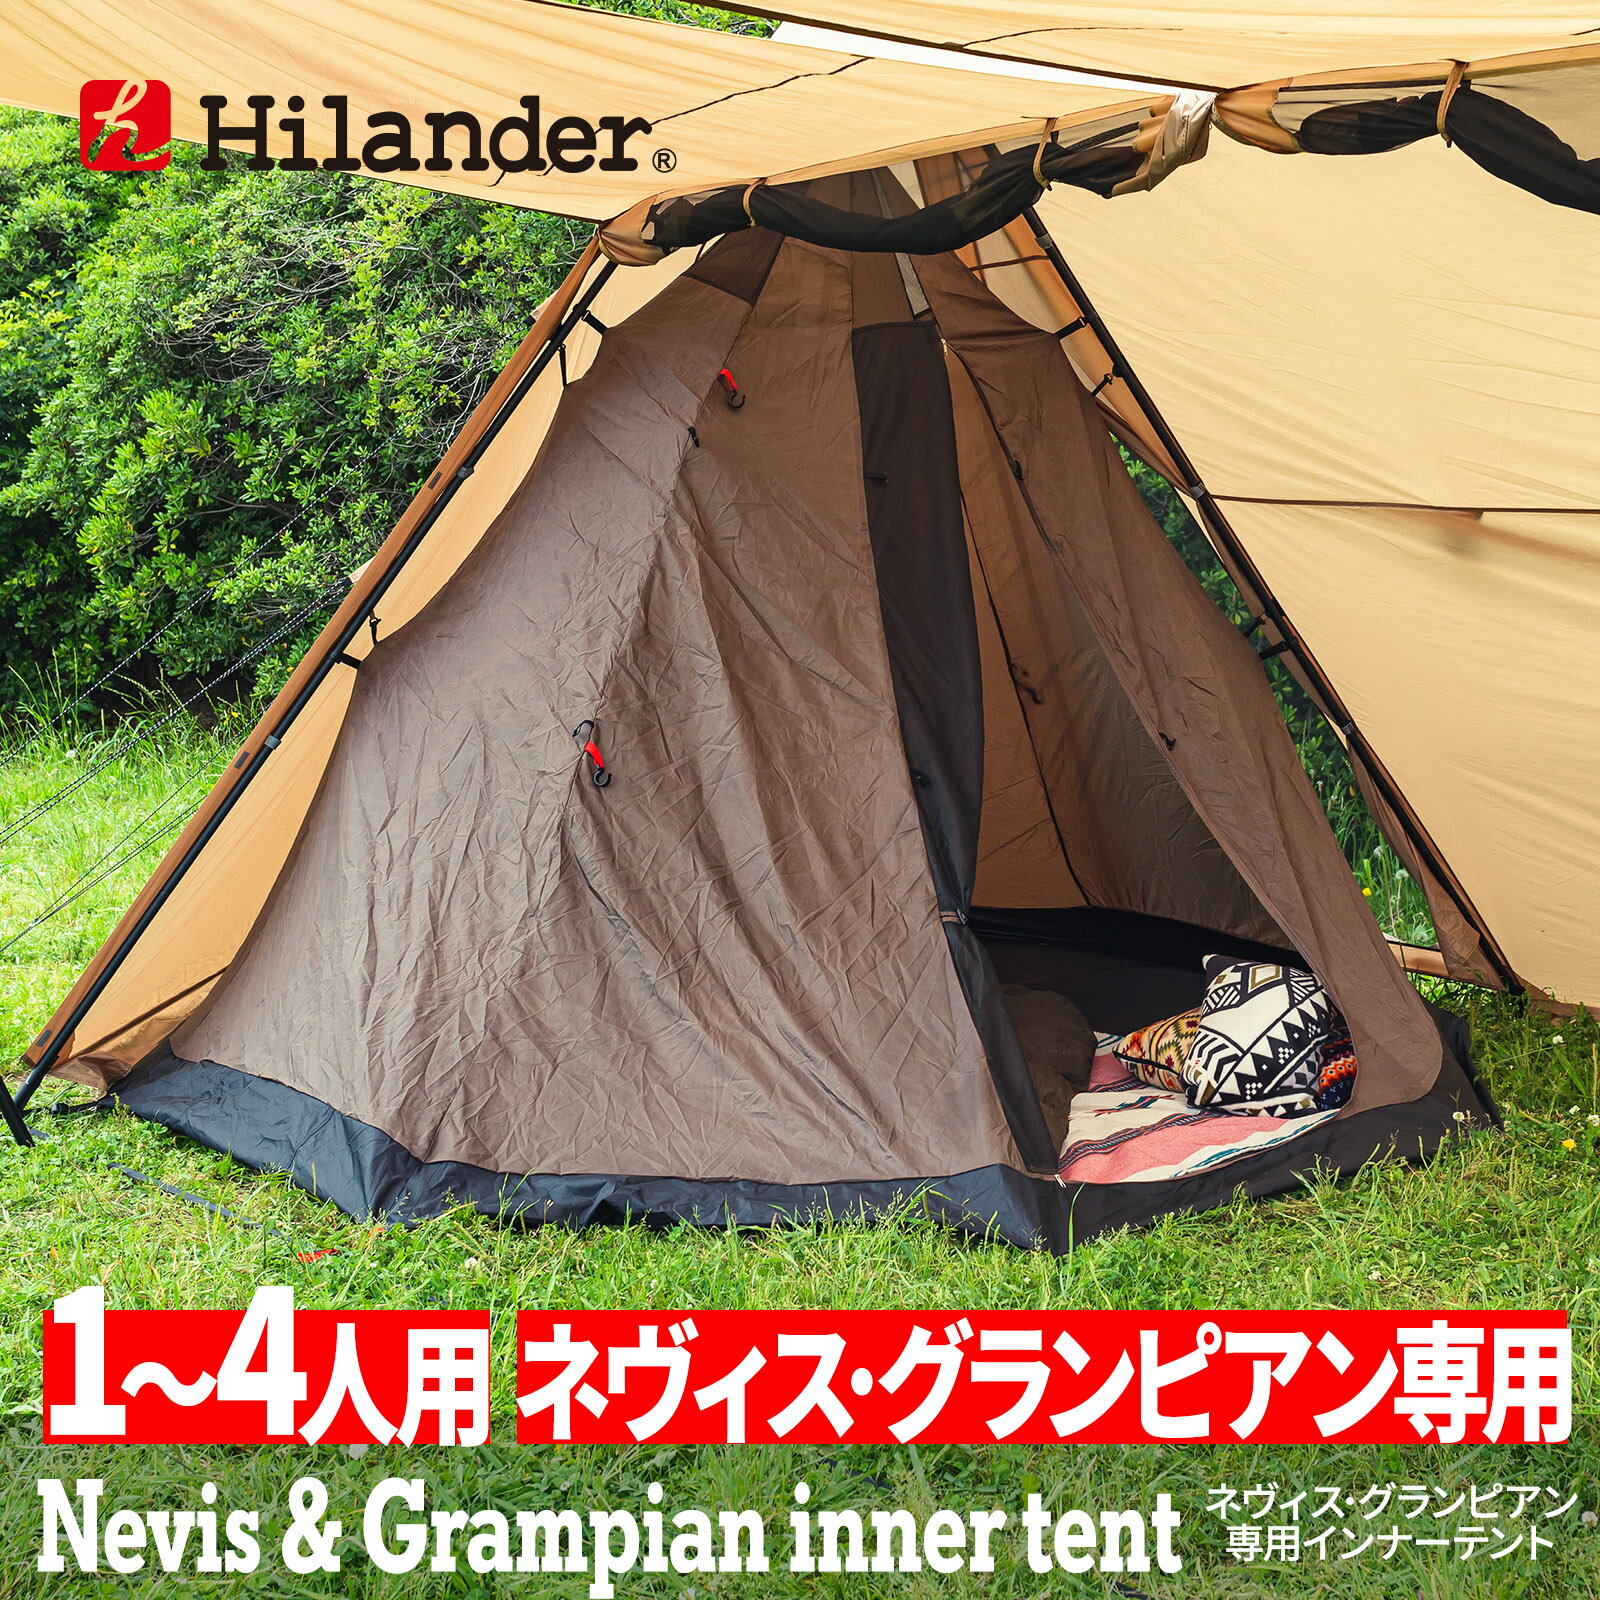 Hilander(ハイランダー) ネヴィス・グランピアン 専用インナーテント HCA2044